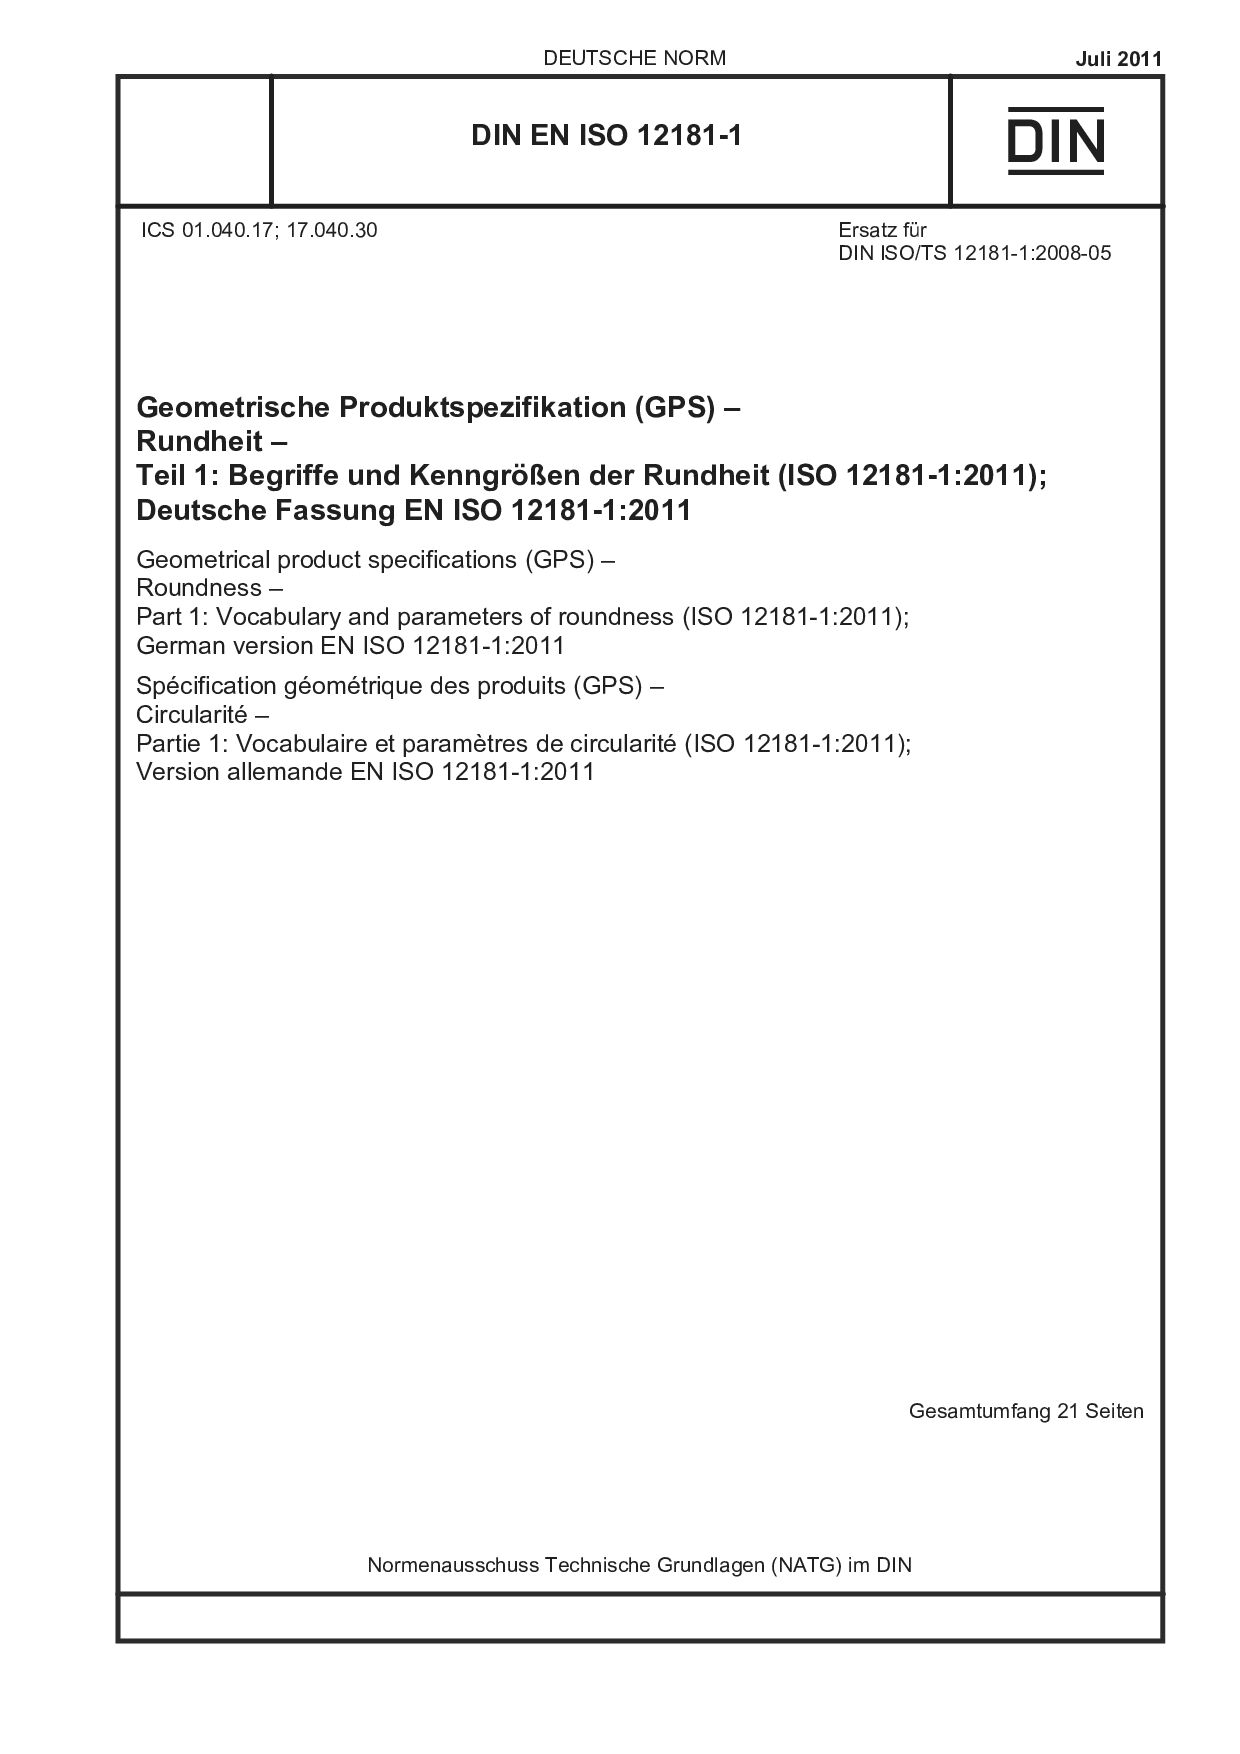 DIN EN ISO 12181-1:2011